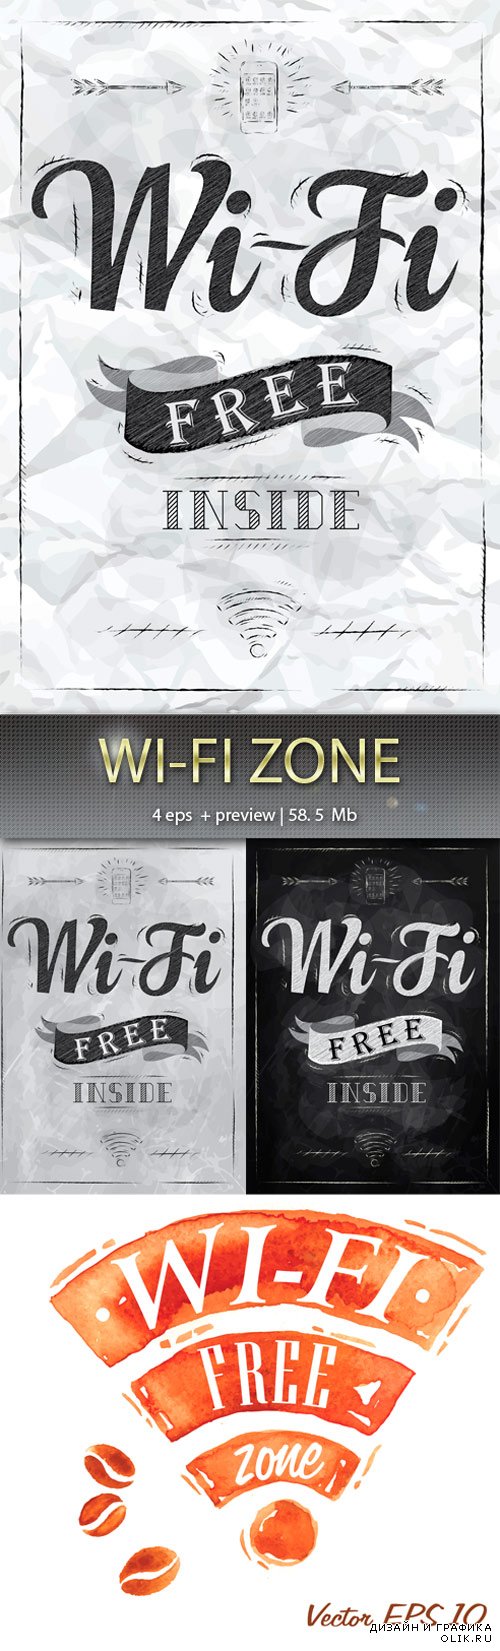 Wi – Fi  зона  - Wi-Fi zone